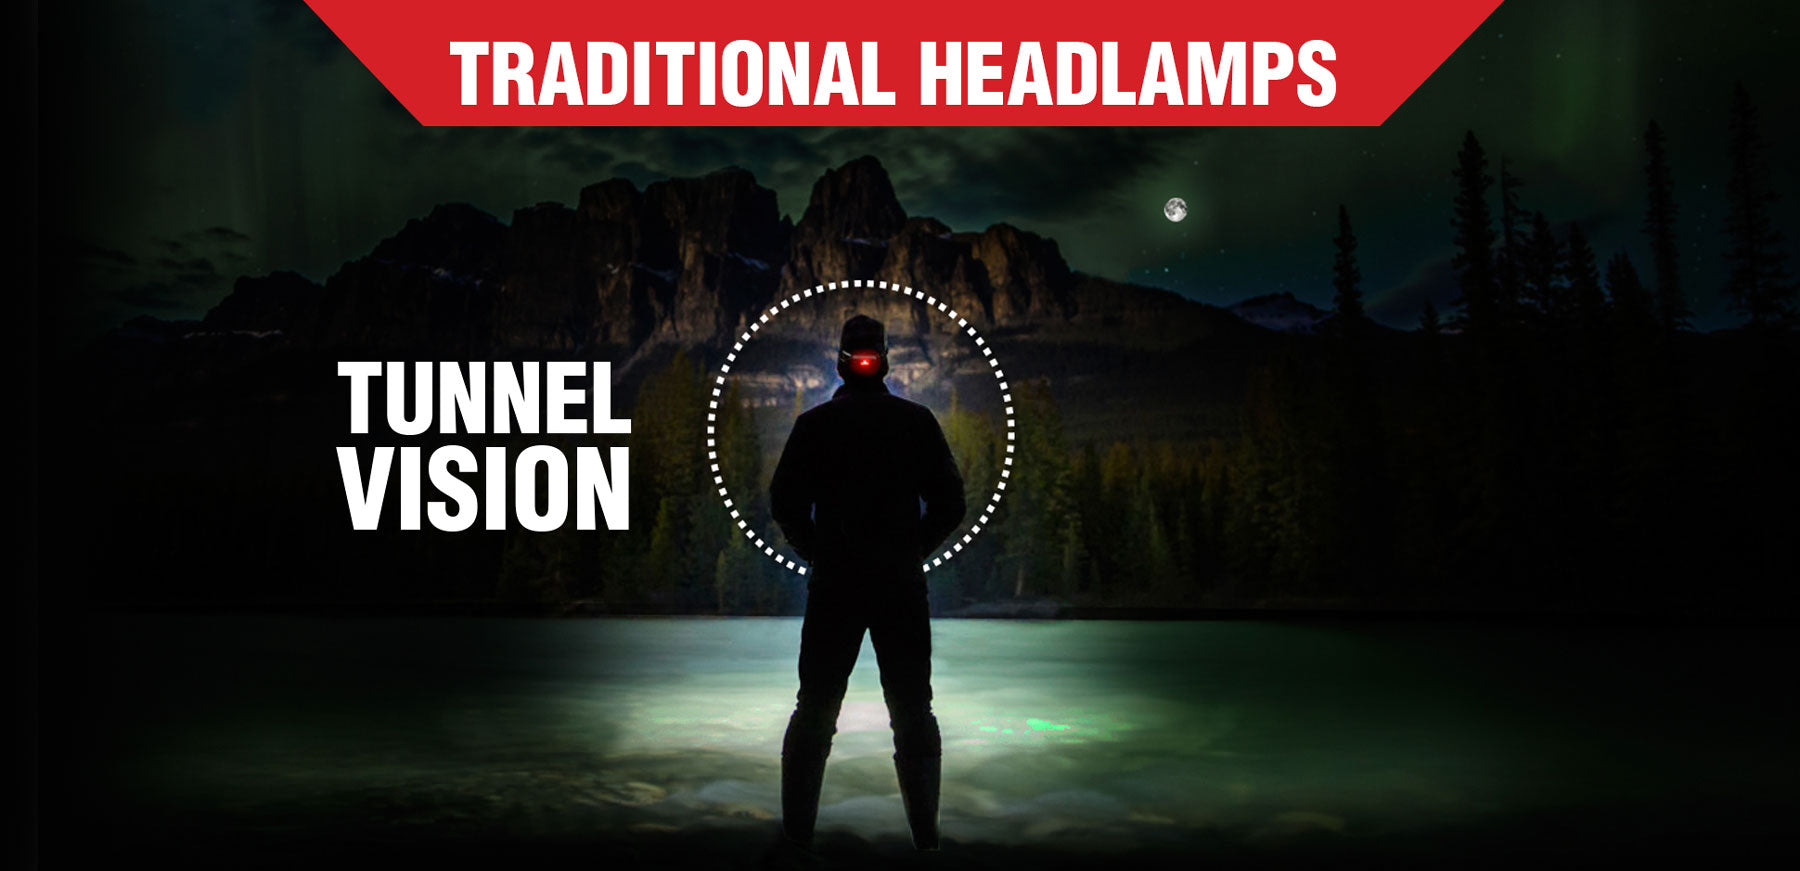 Vision du tunnel créé par la lampe frontale traditionnelle